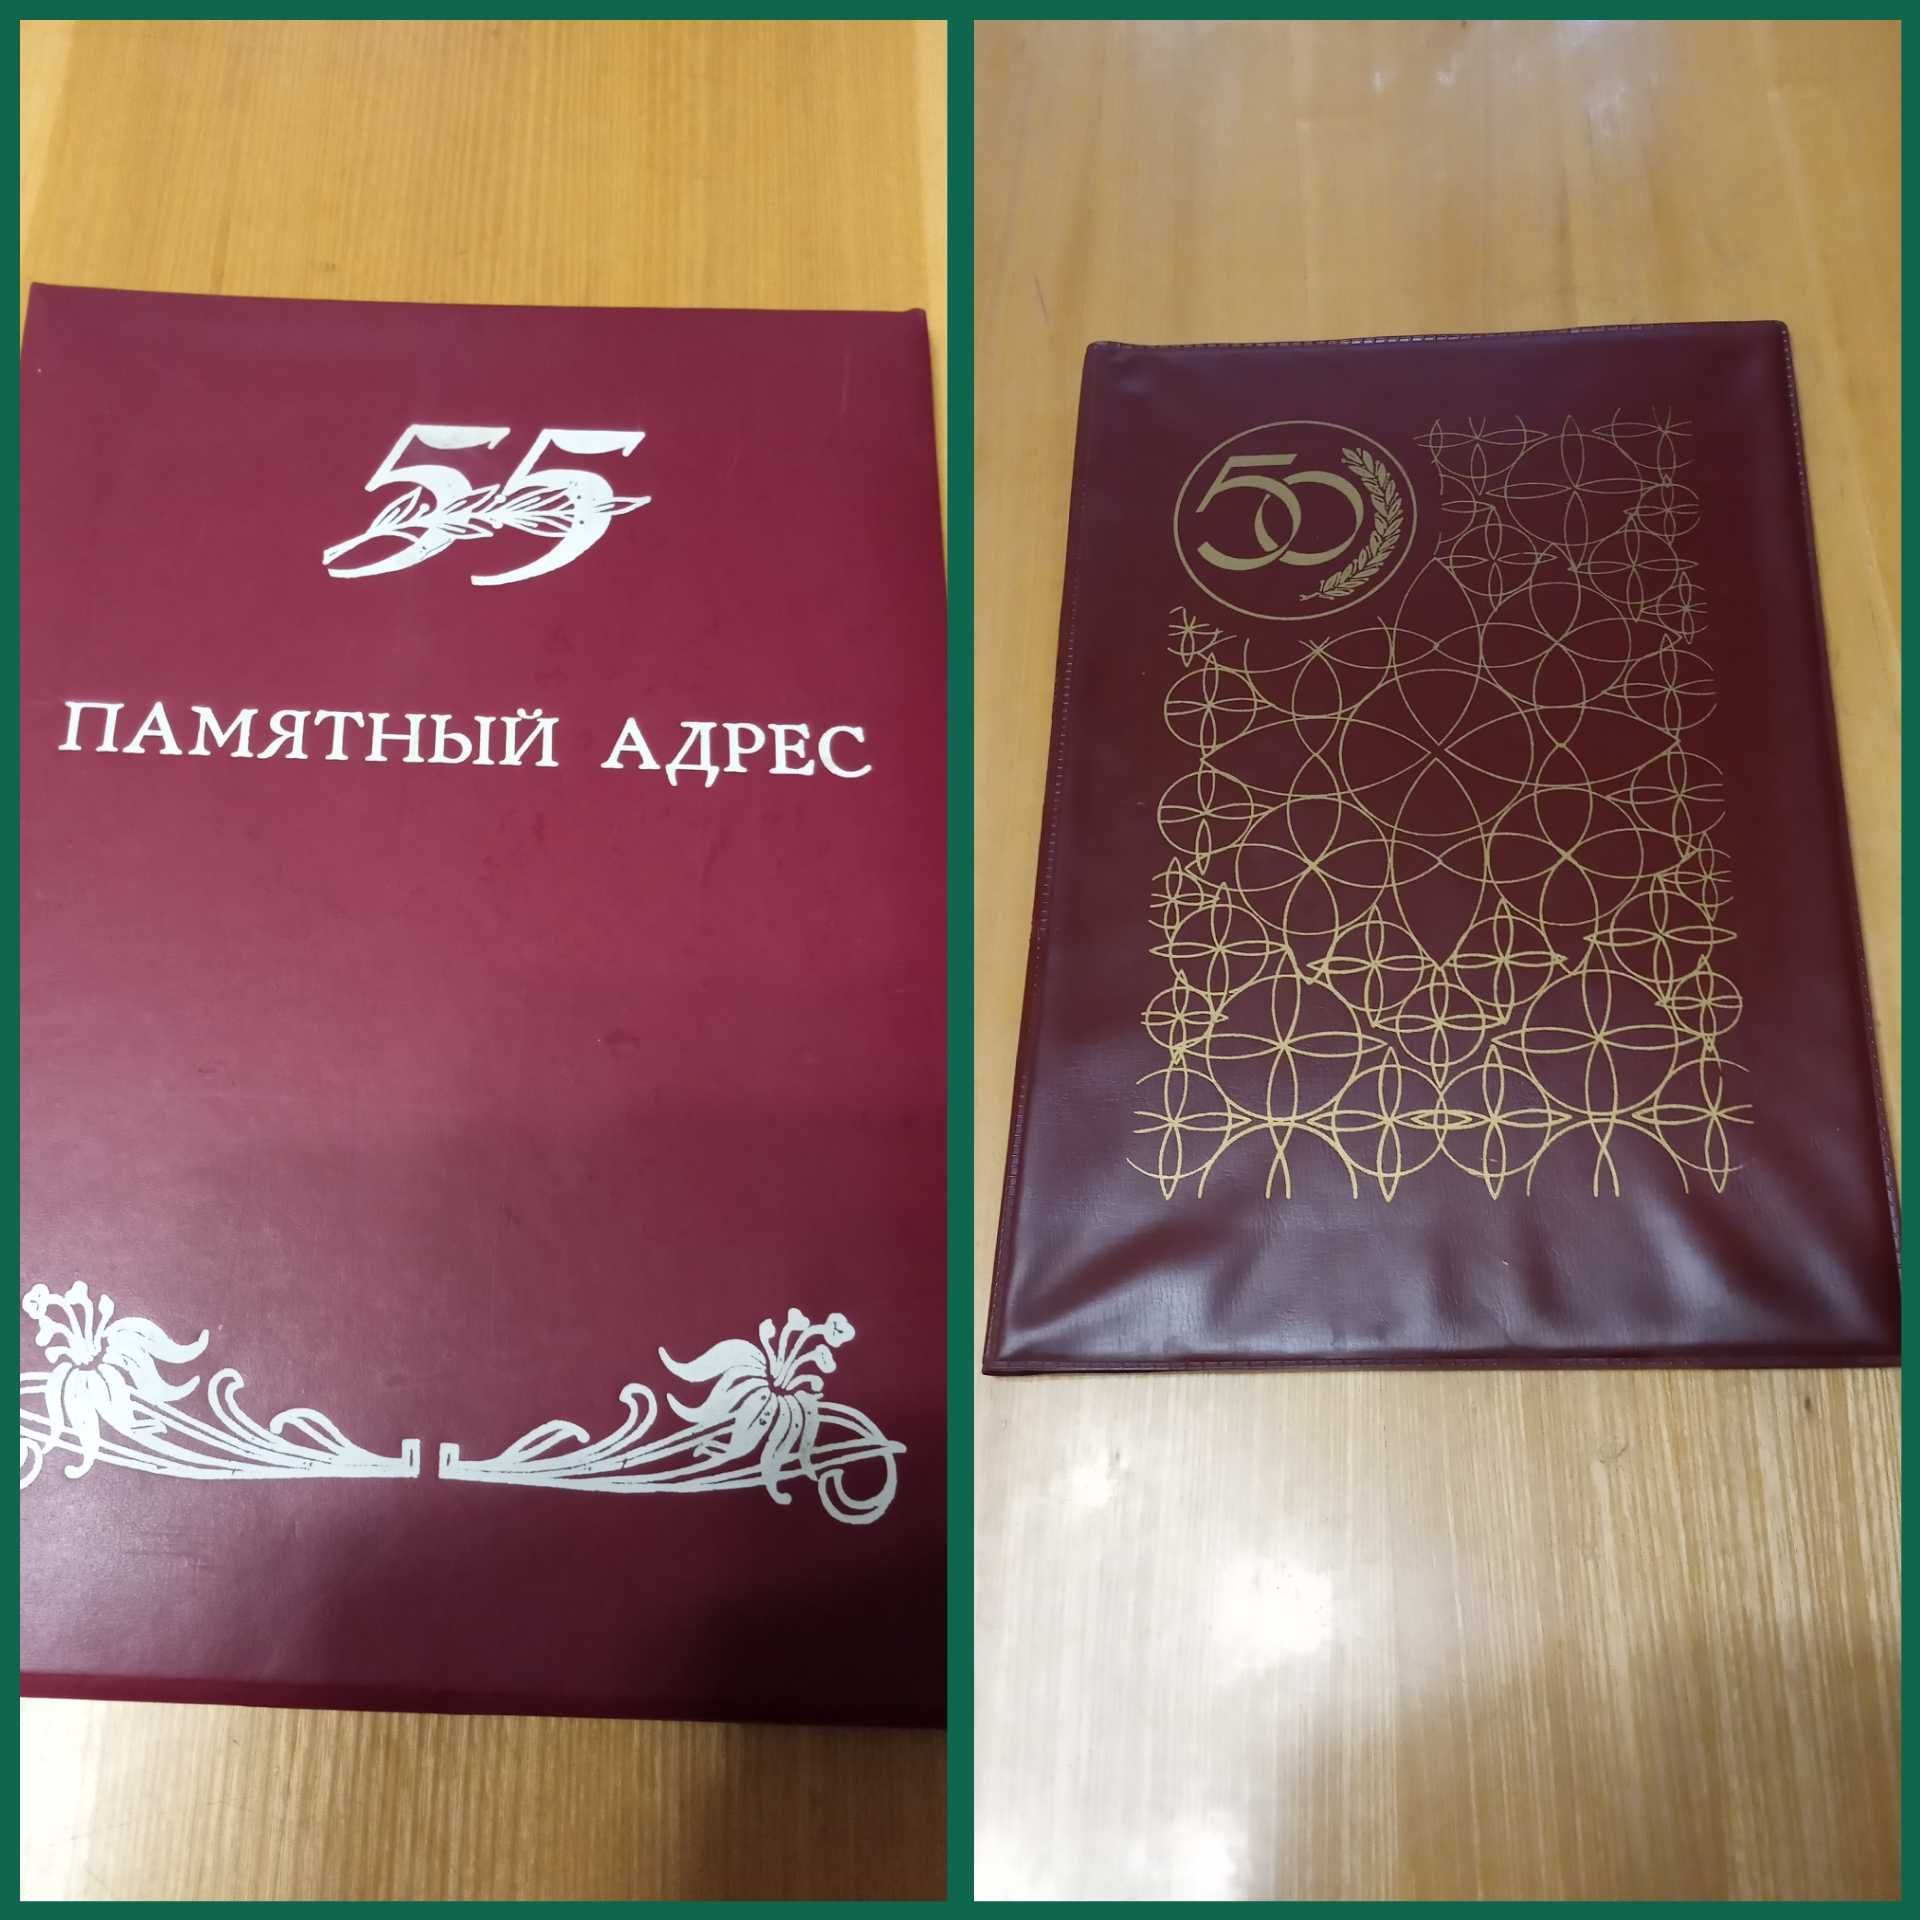 Продам книги разного направления по 10 гр., папки с 50-и летием СССР